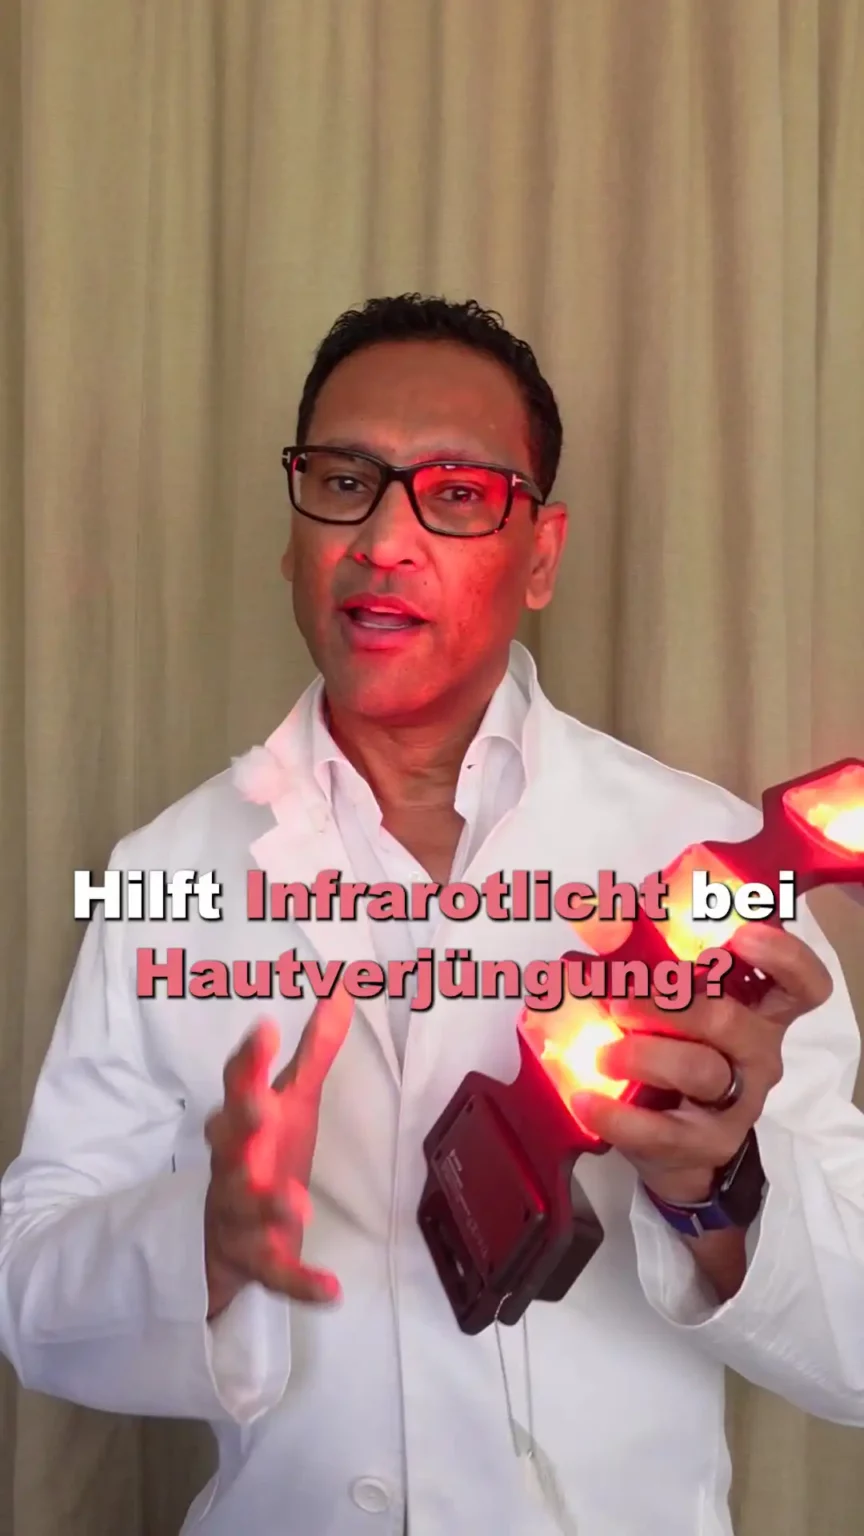 Aufnahme von Herr Elzebair mit einer Infrarotlichtmaske und dem Text "Hilft Infrarotlicht bei Hautverjüngung?"